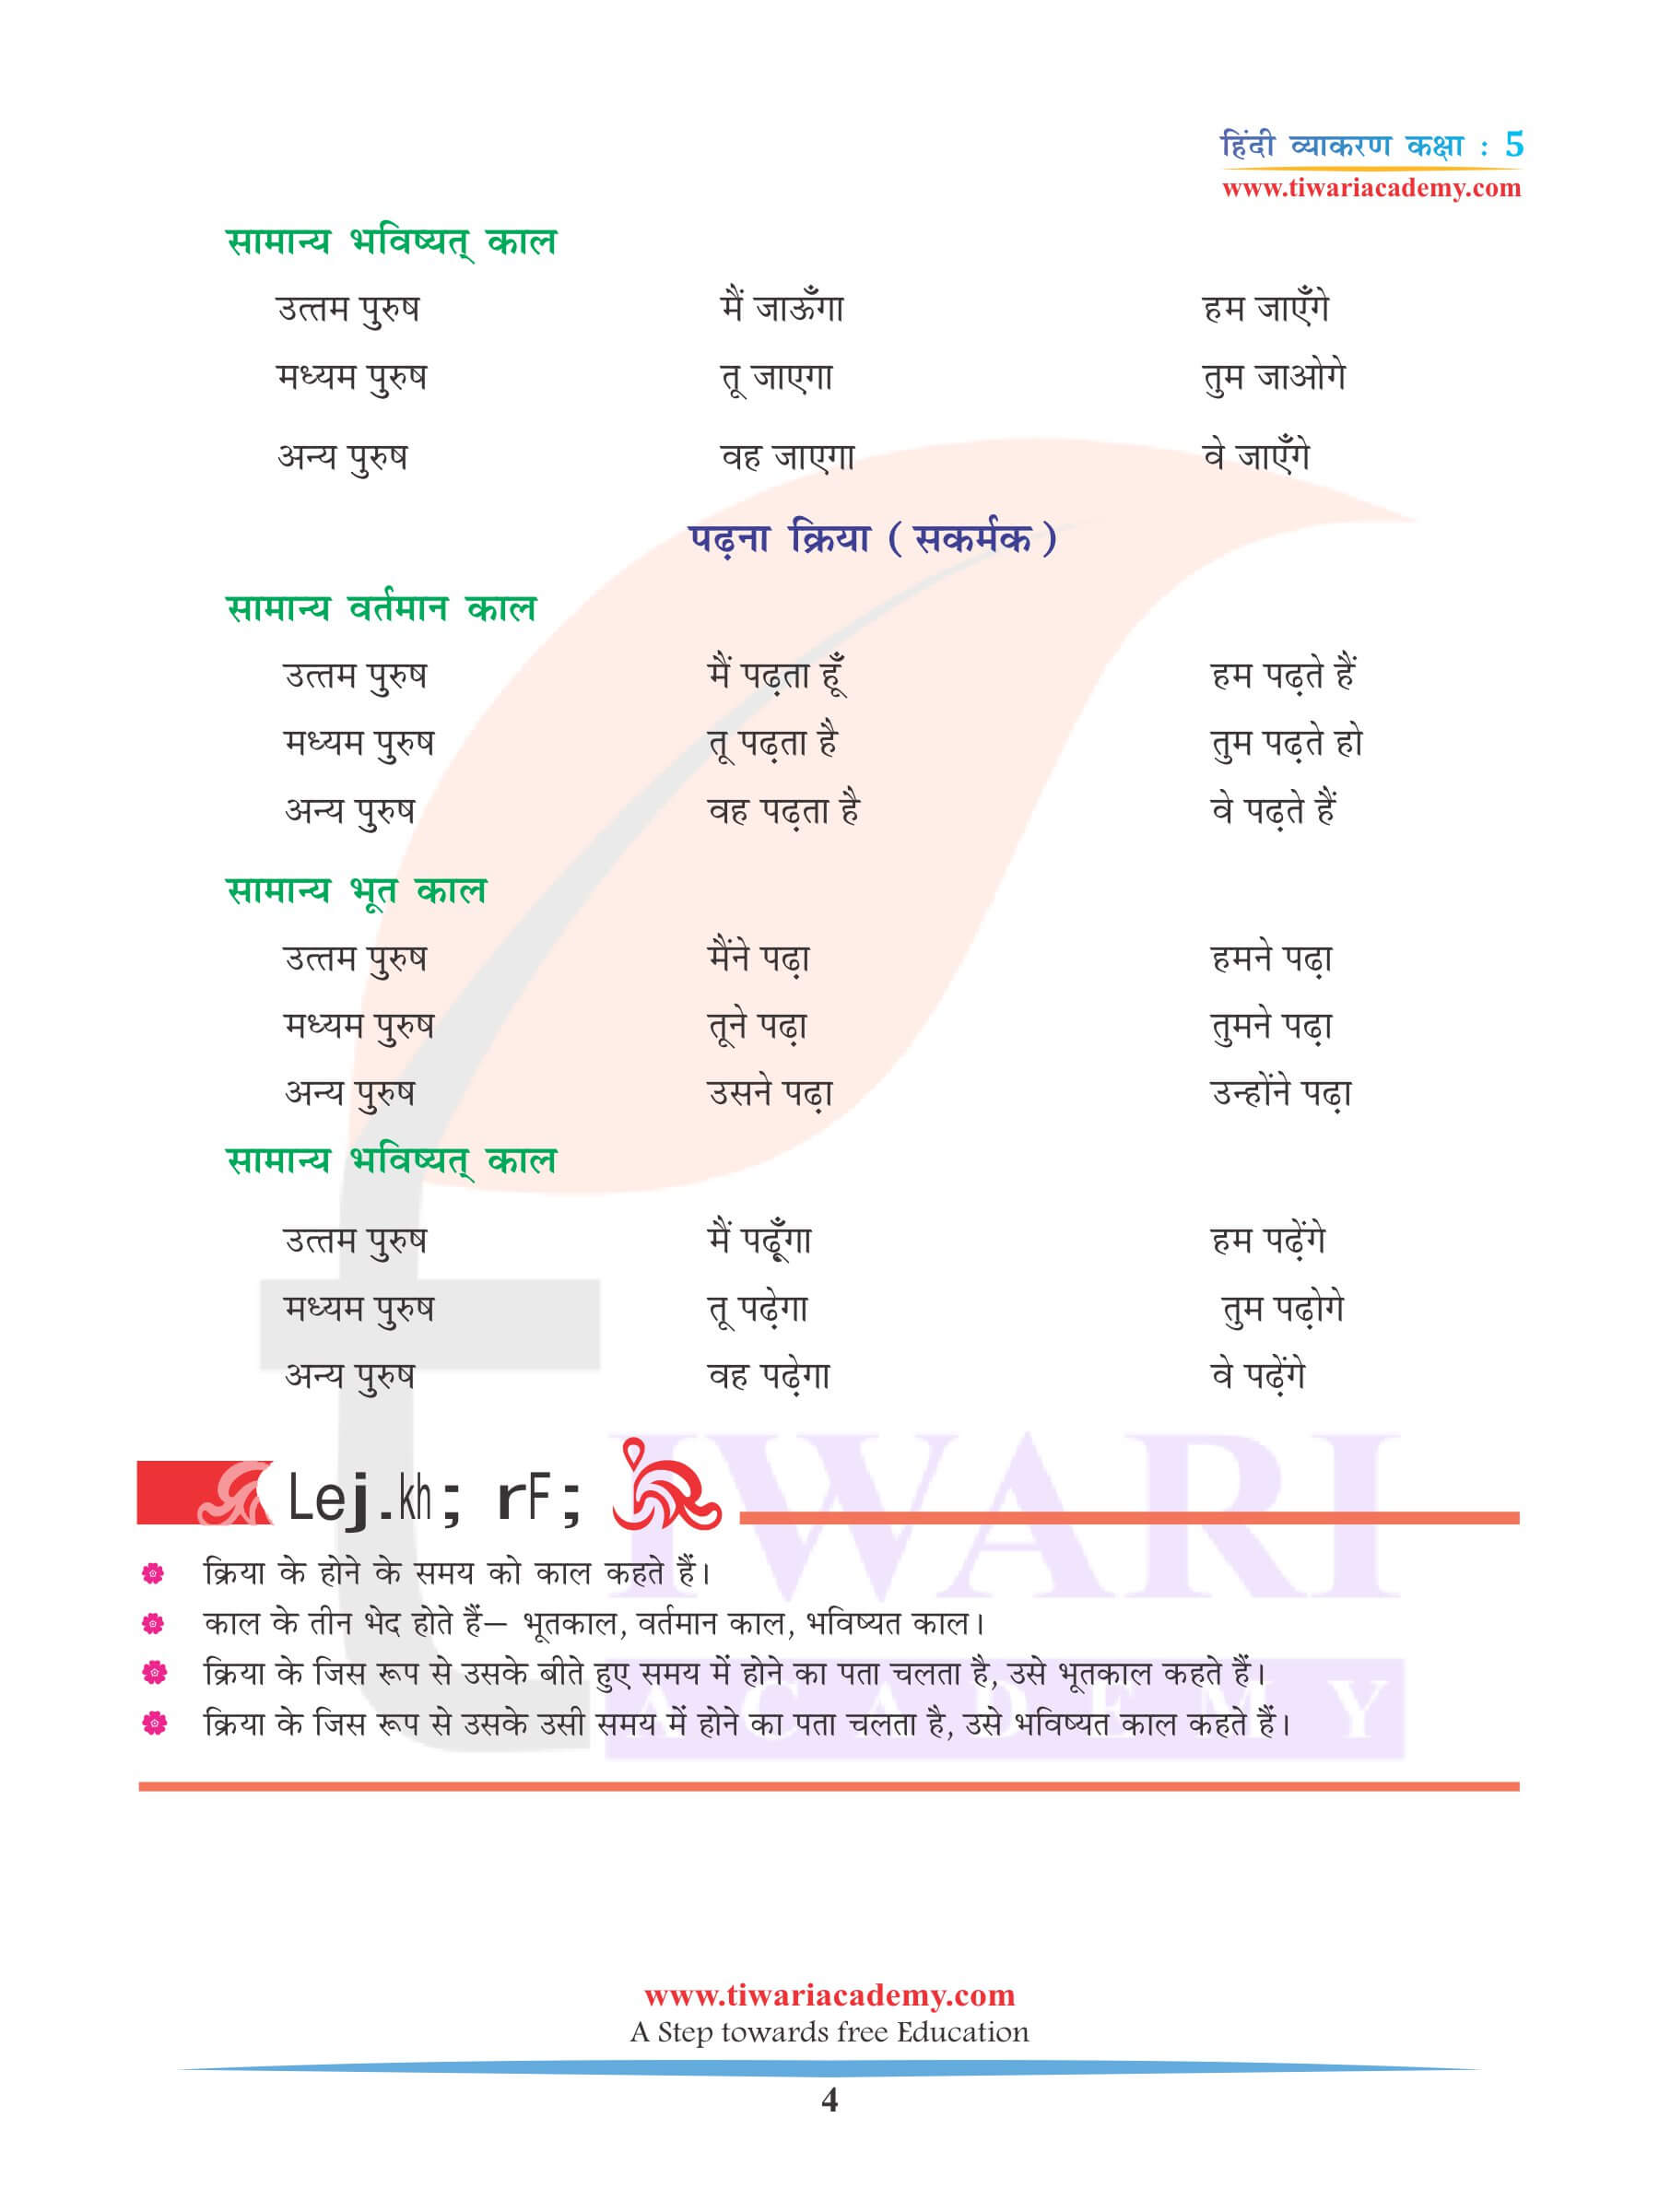 कक्षा 5 हिंदी व्याकरण अध्याय 8 काल के लिए अभ्यास